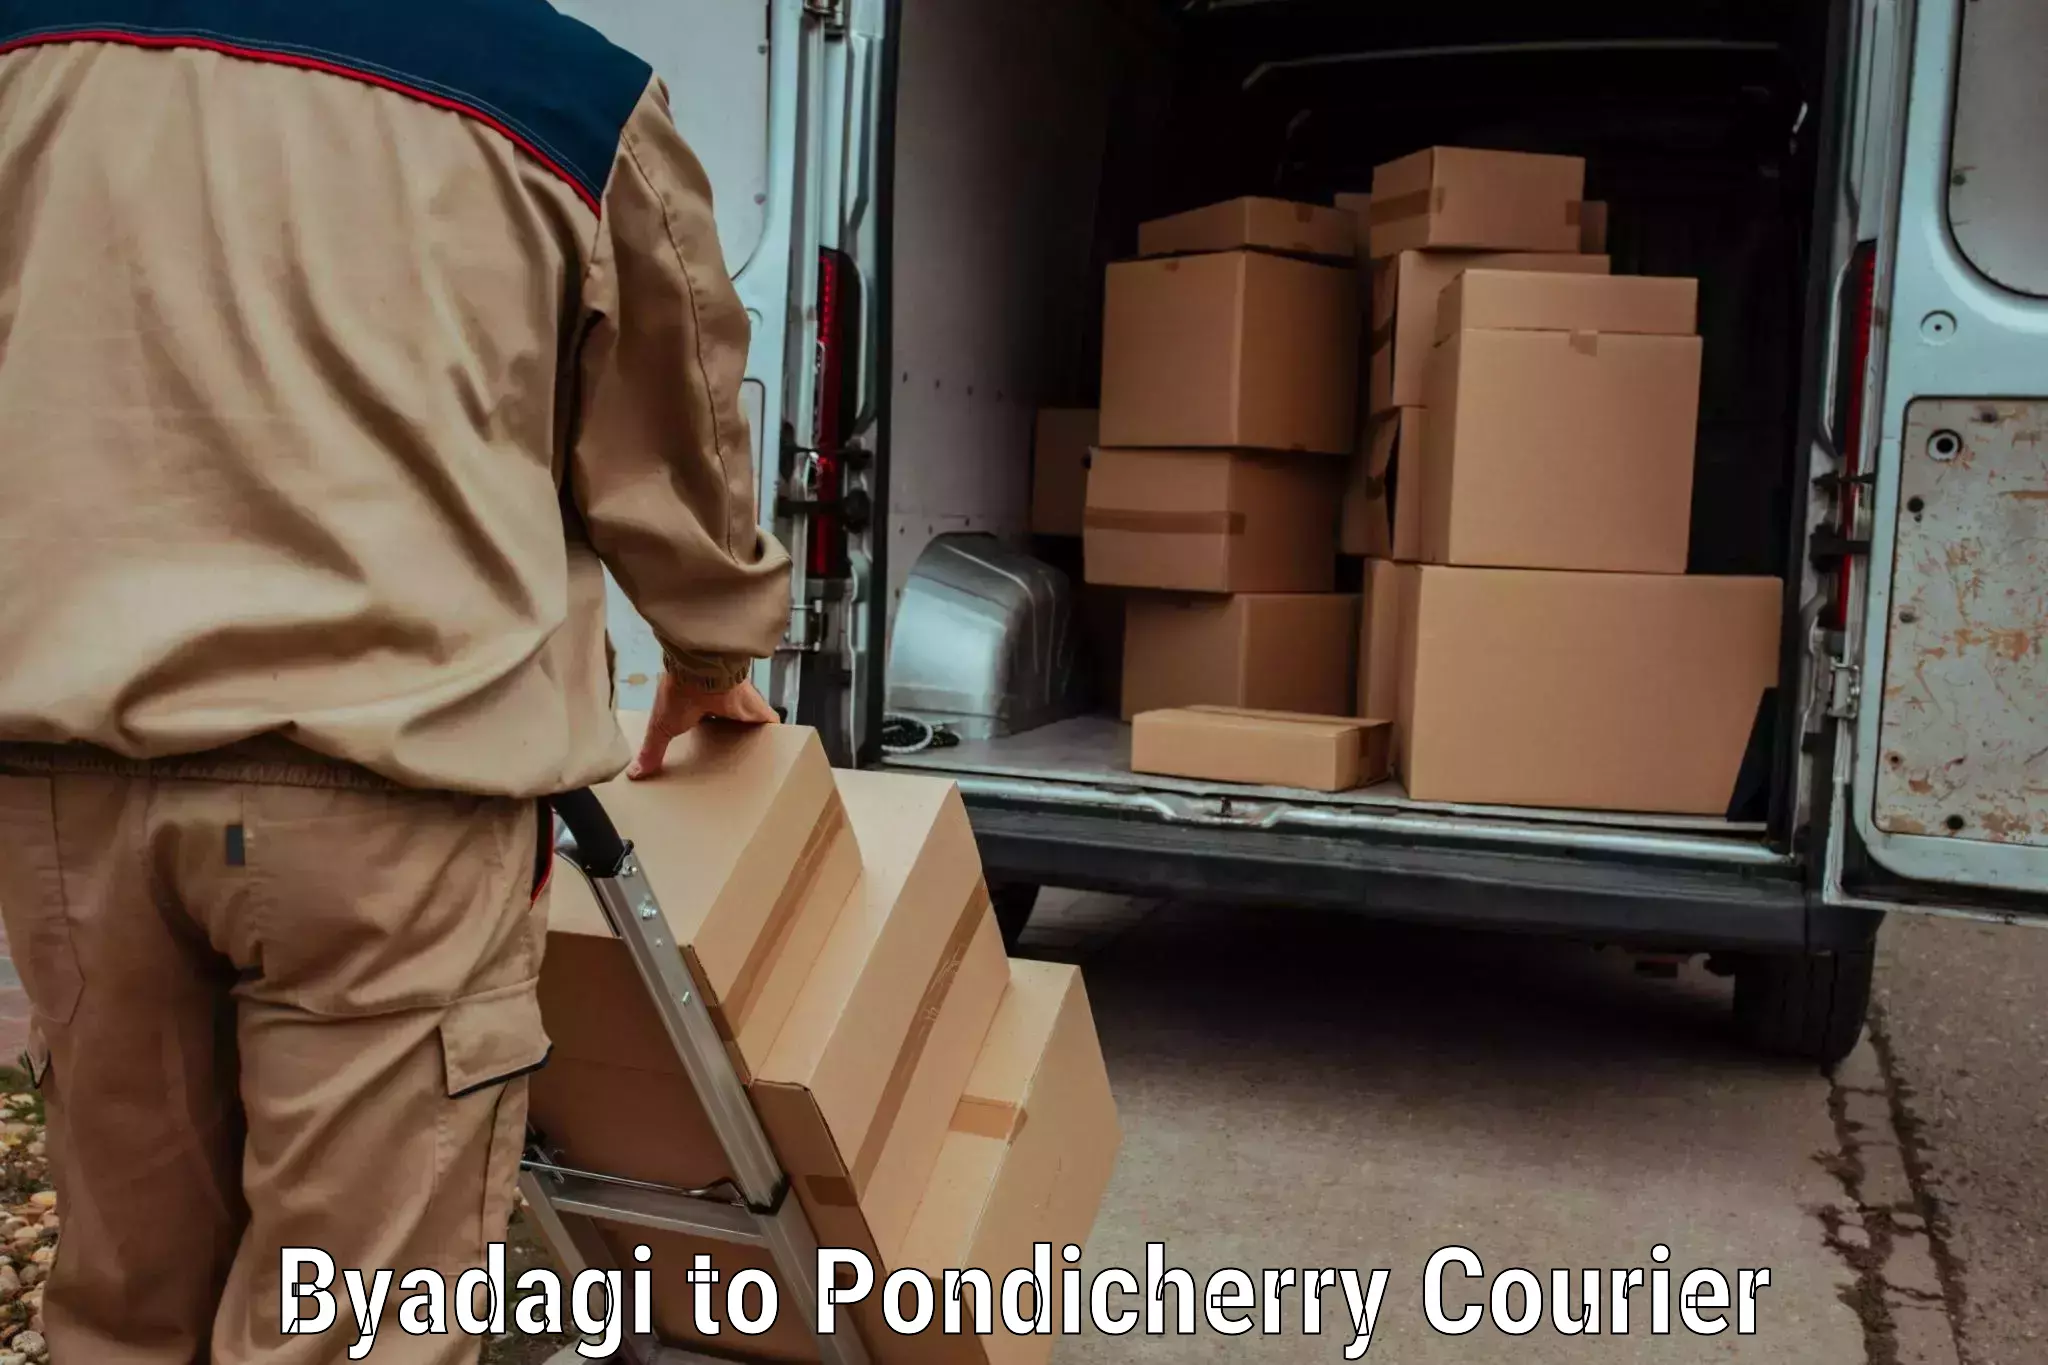 User-friendly delivery service Byadagi to Pondicherry University